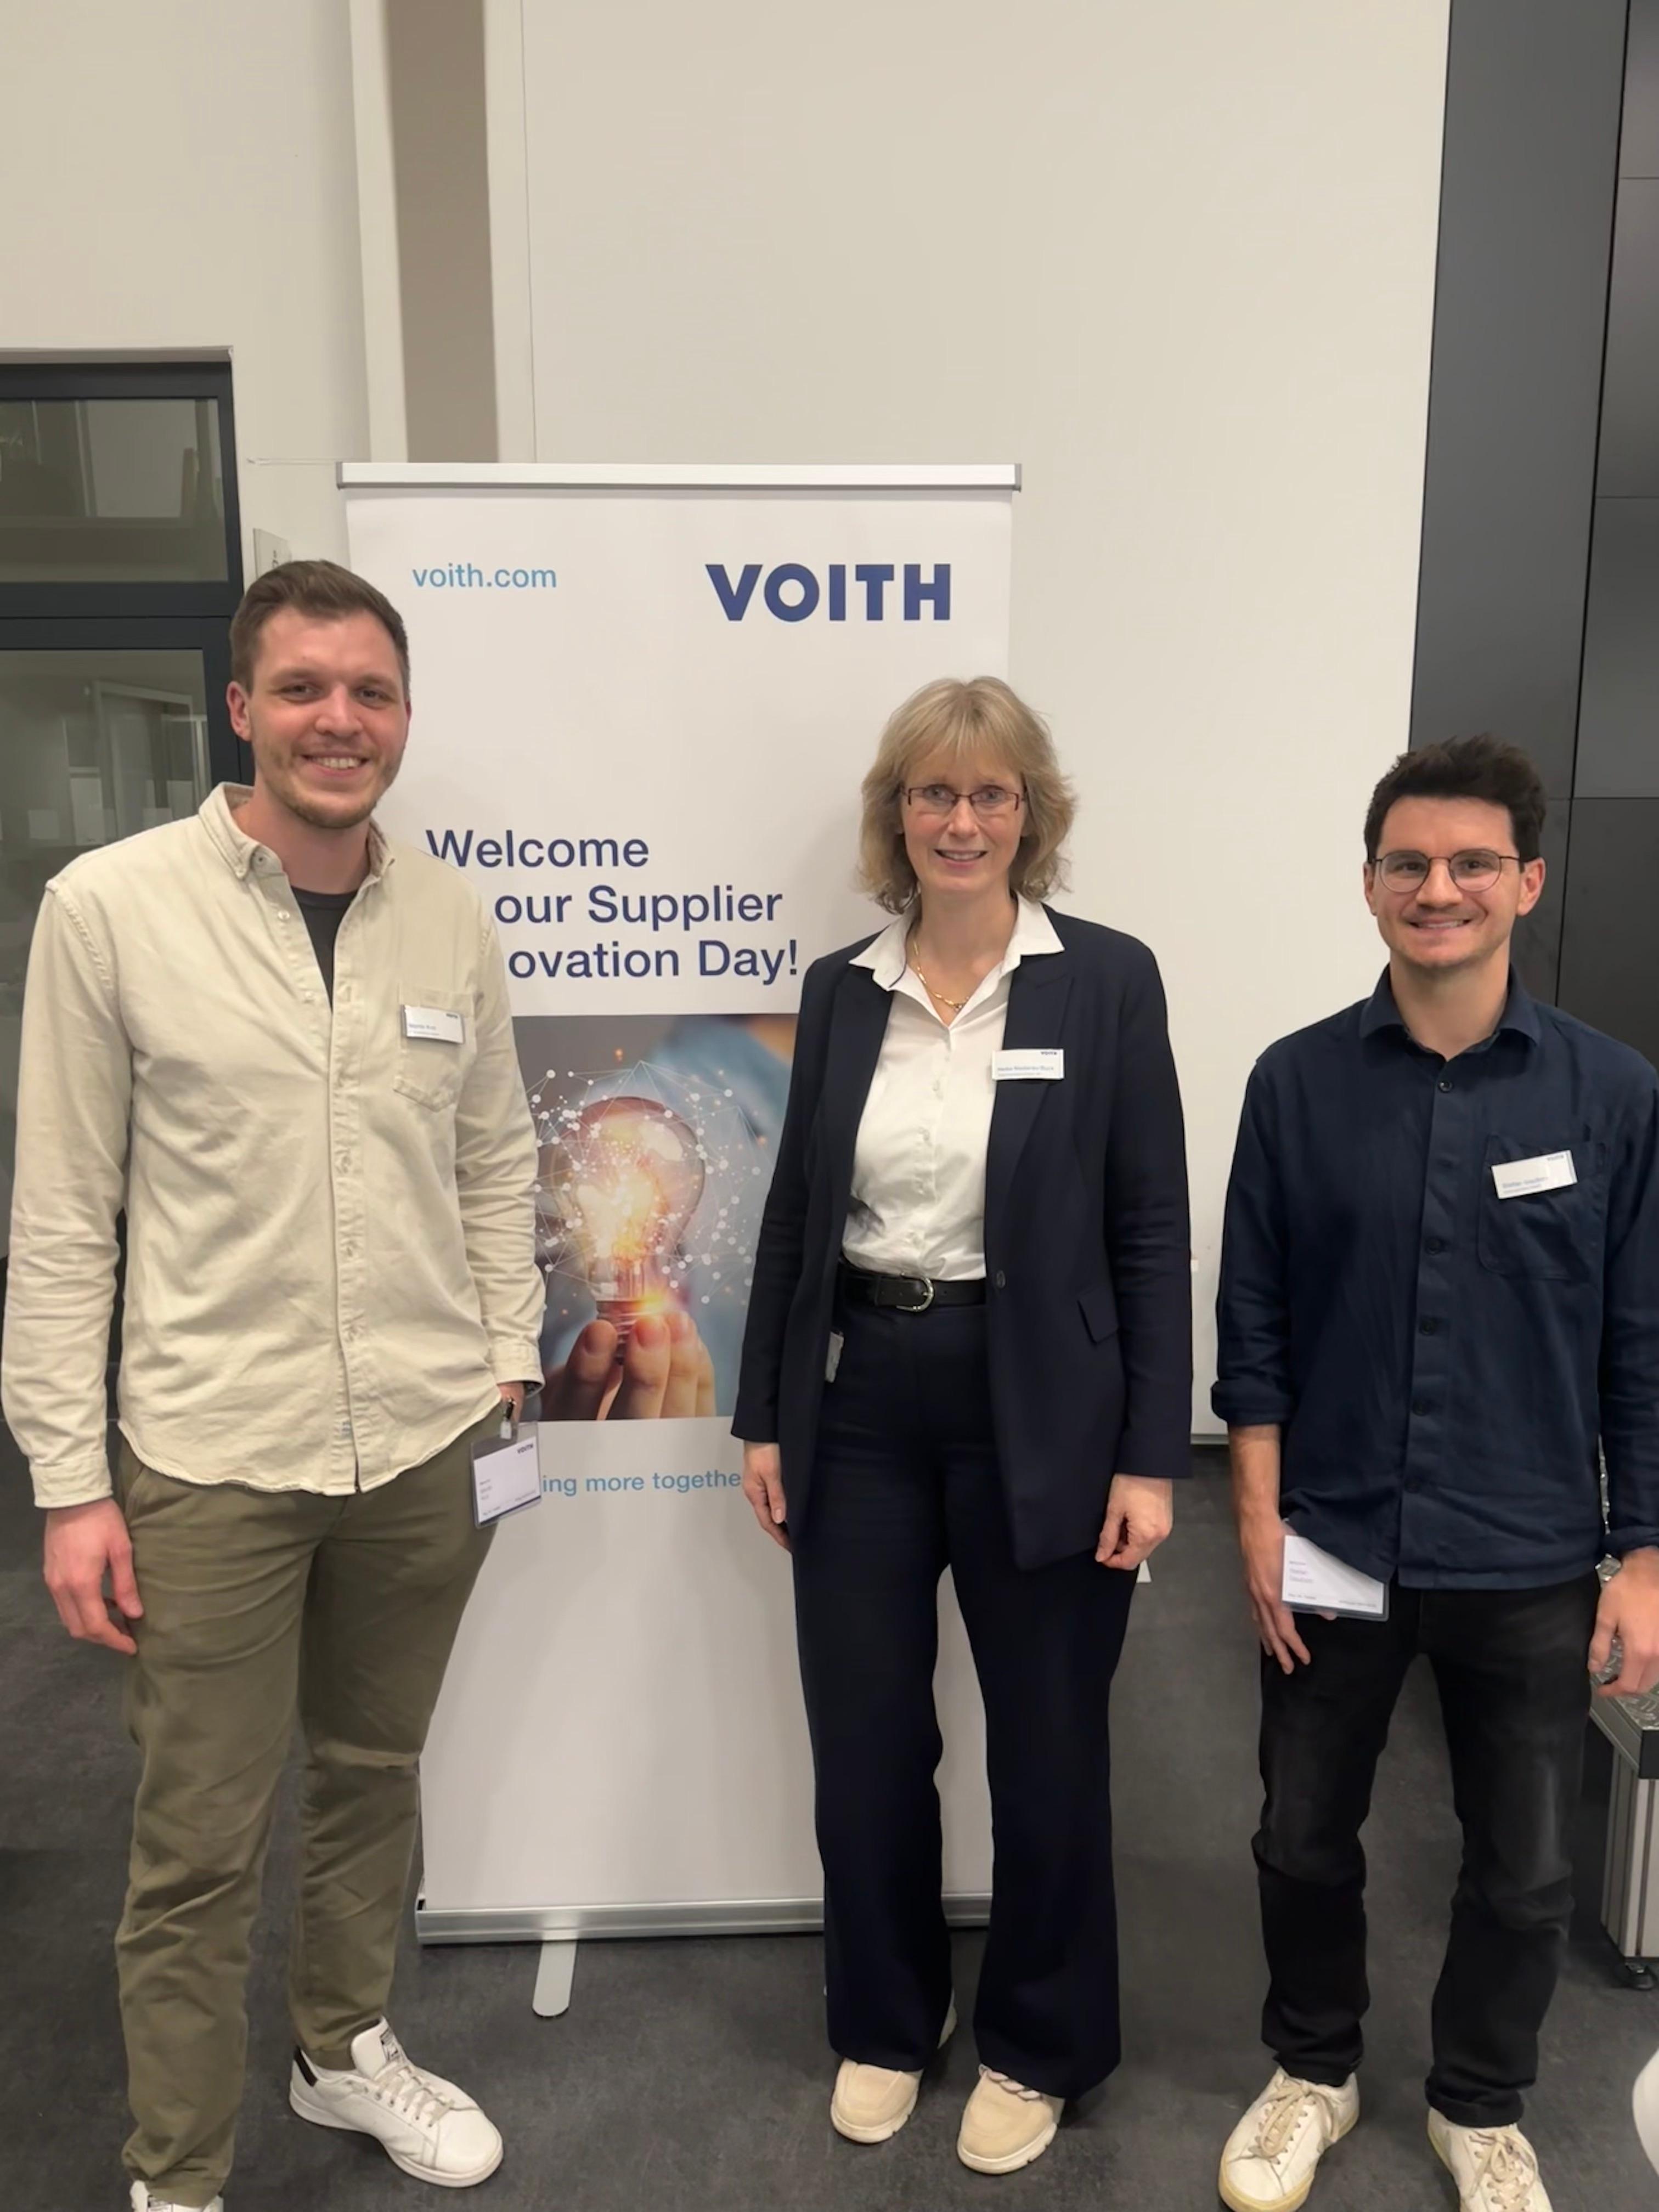 Wir waren auf Einladung von Voith zum Supplier Innovation Day